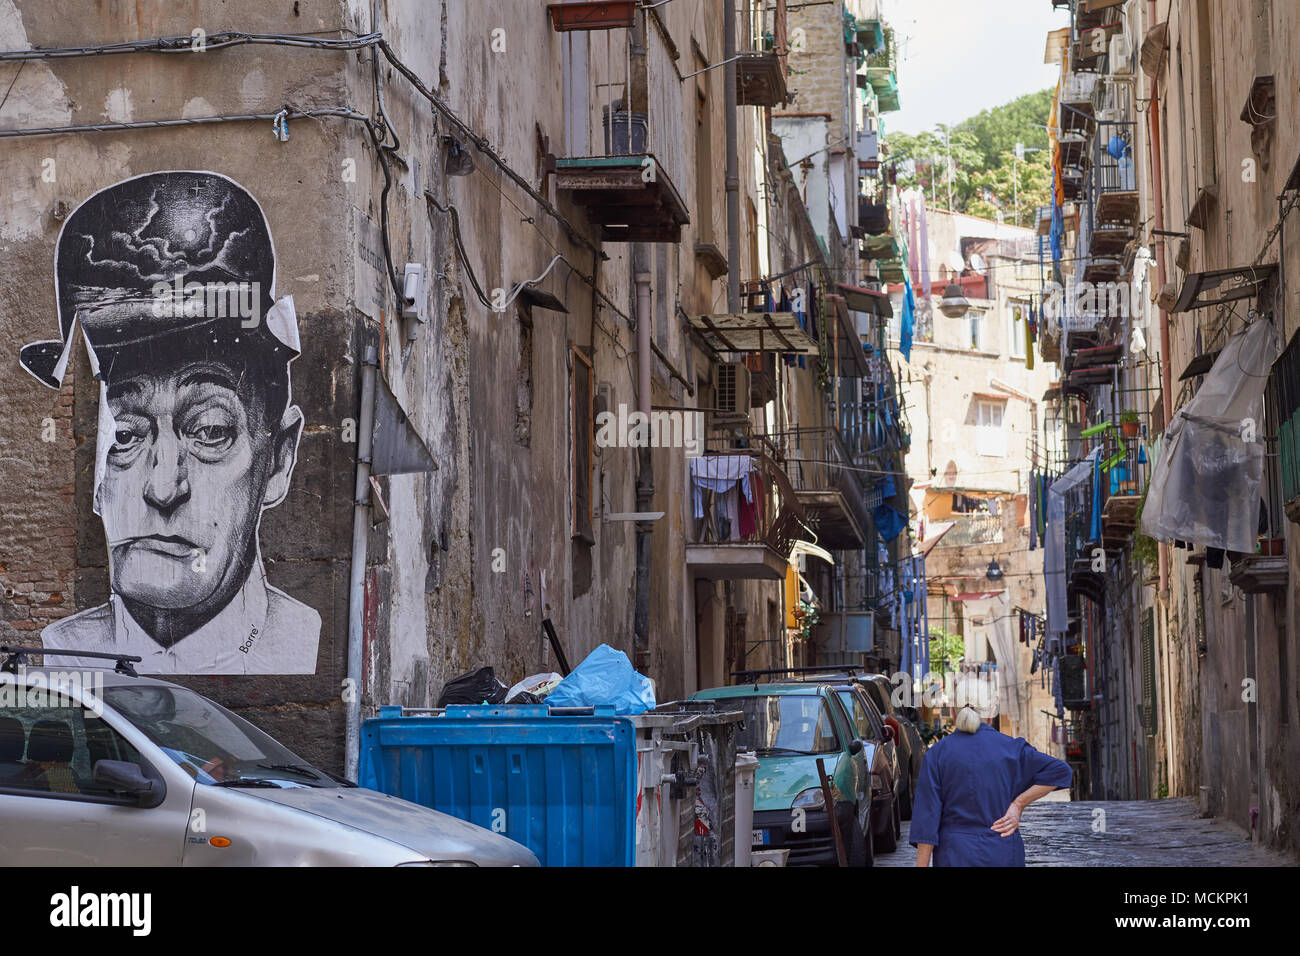 Tipica scena di strada nel centro di Napoli con un murale del famoso comico Toto nel suo vecchio Rione Sanita quartiere centrale - Napoli, Italia Foto Stock